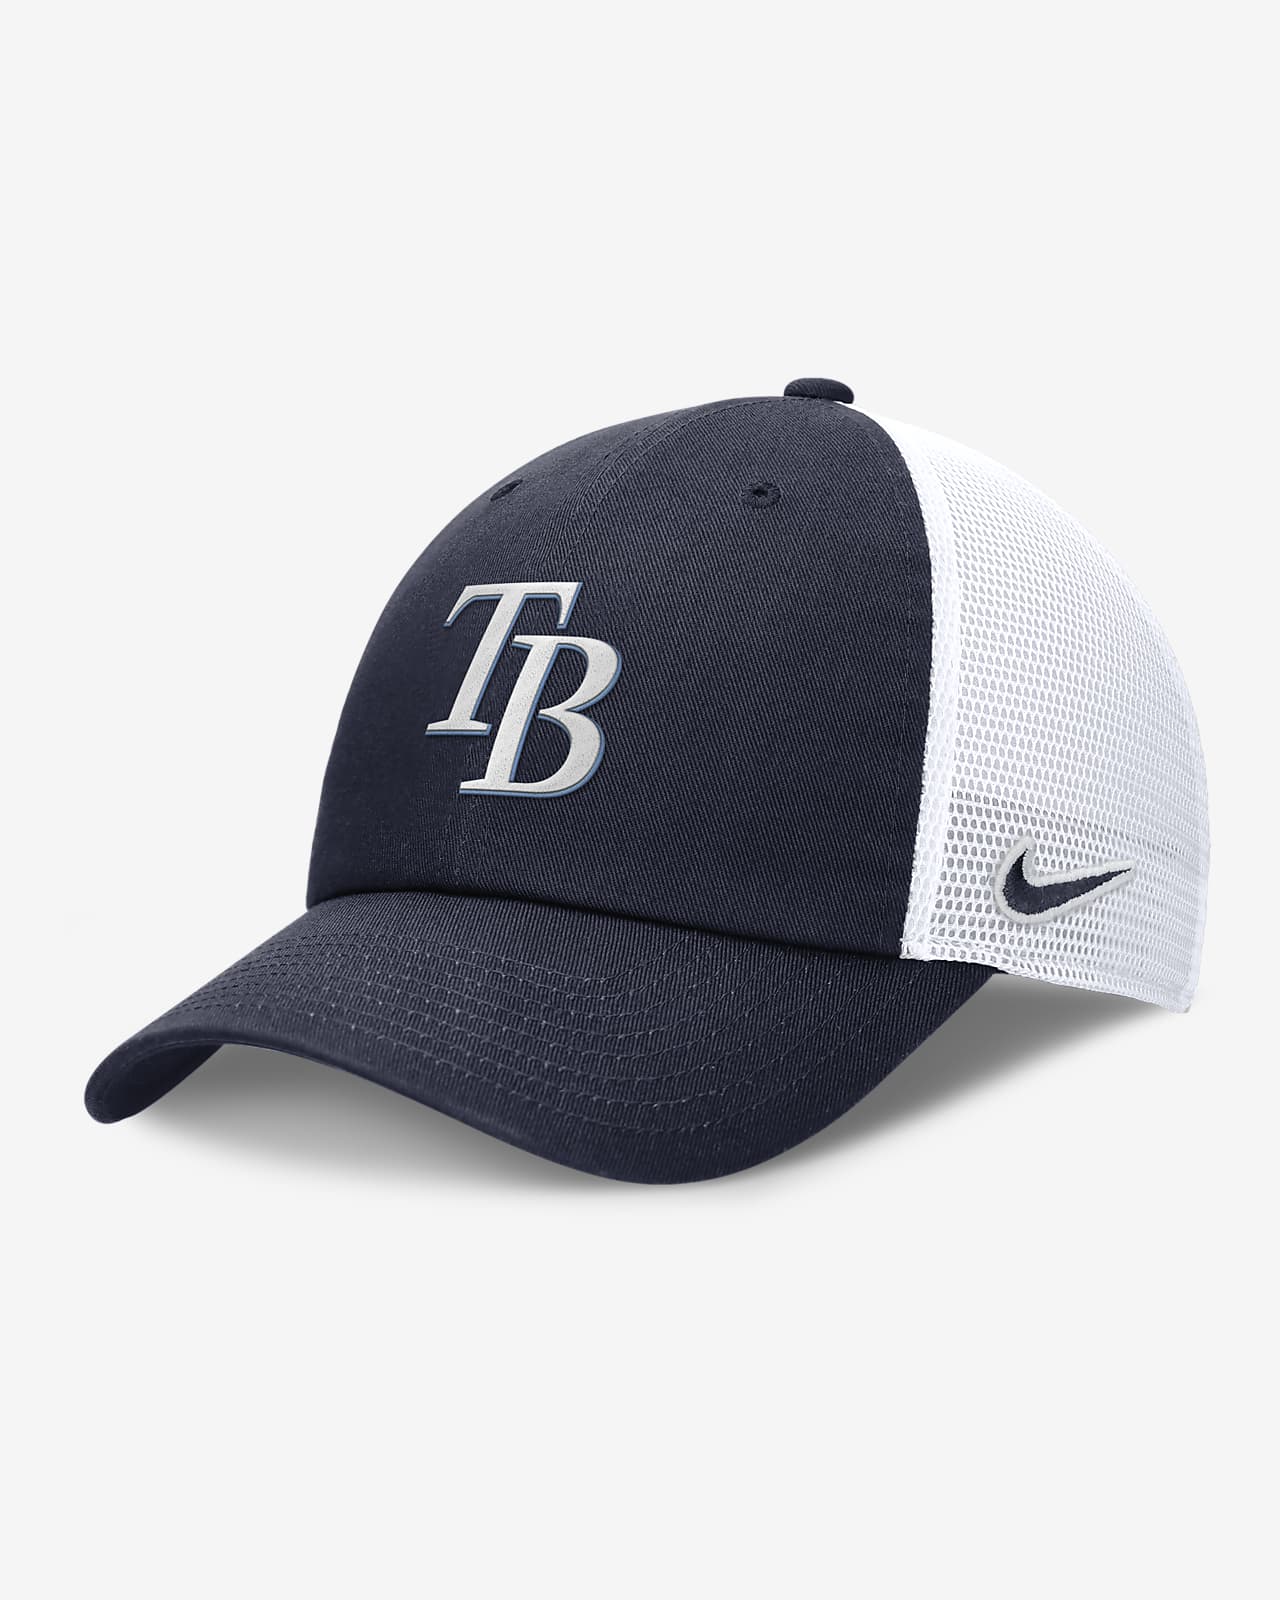 Gorra de rejilla Nike de la MLB ajustable para hombre Tampa Bay